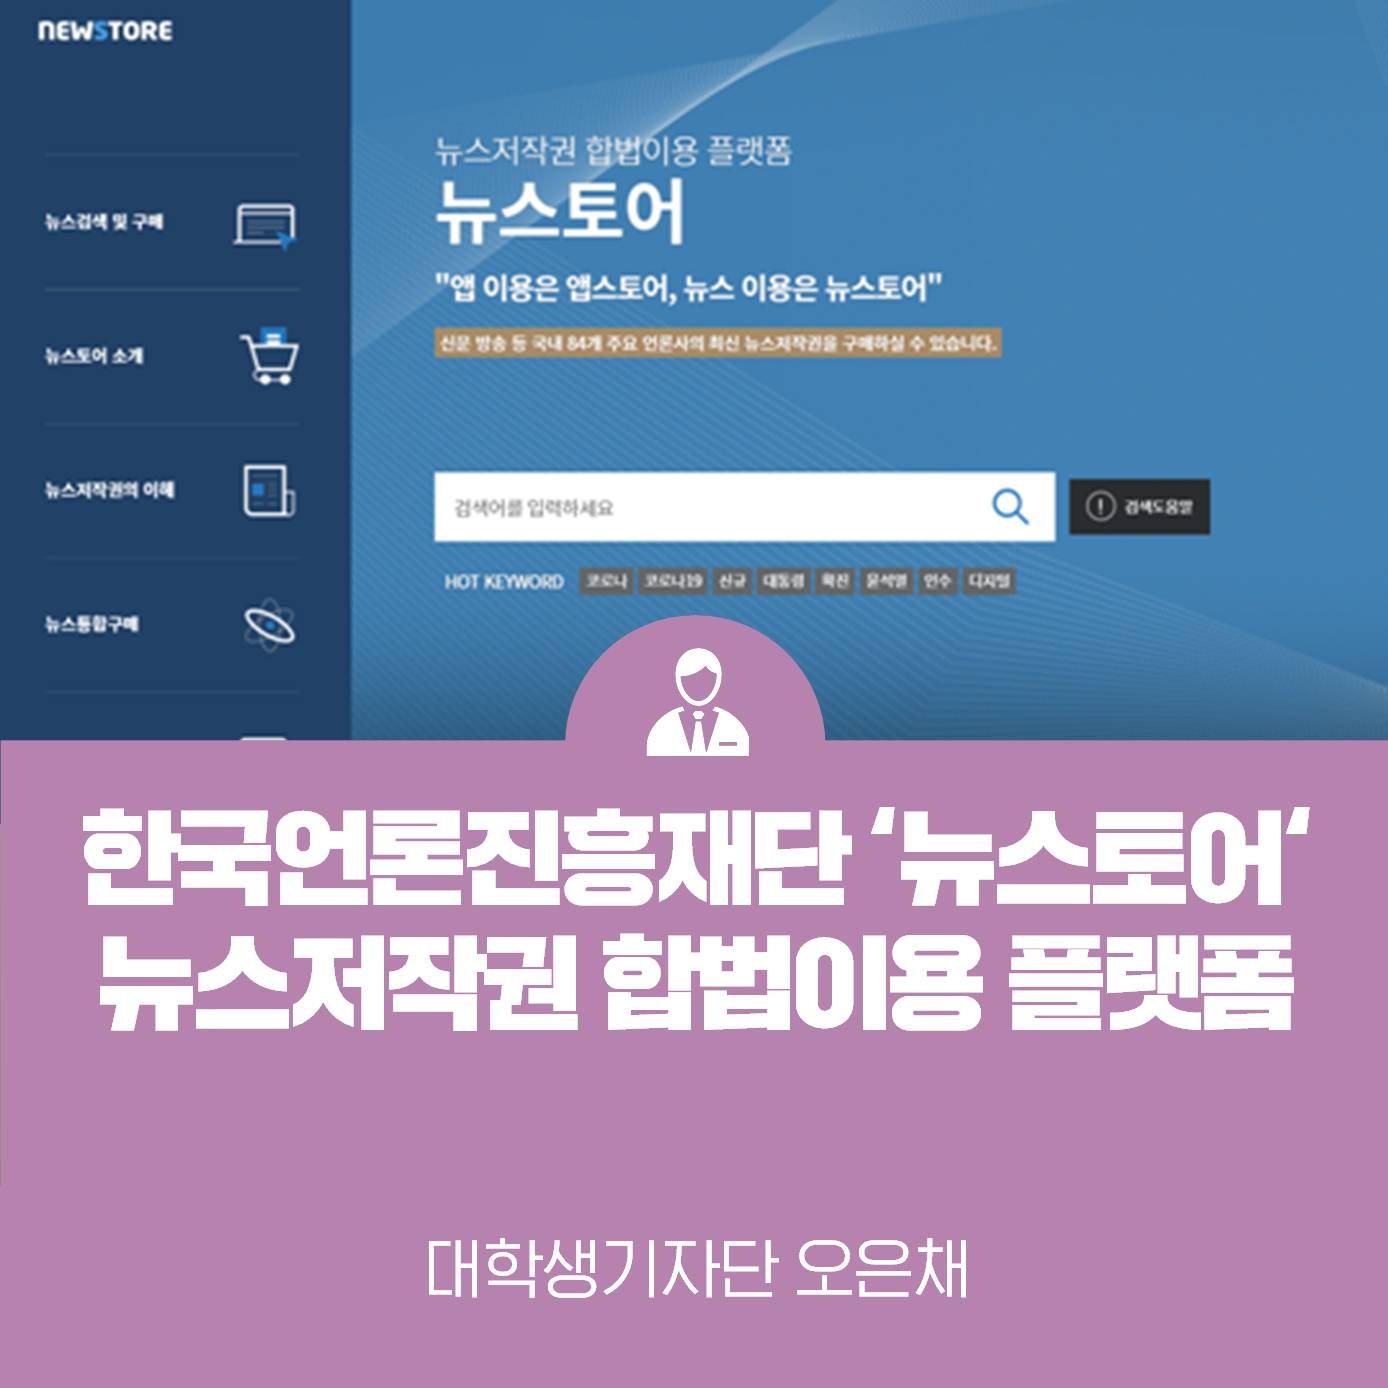 뉴스저작권 합법이용 플랫폼 <한국언론진흥재단 뉴스토어>